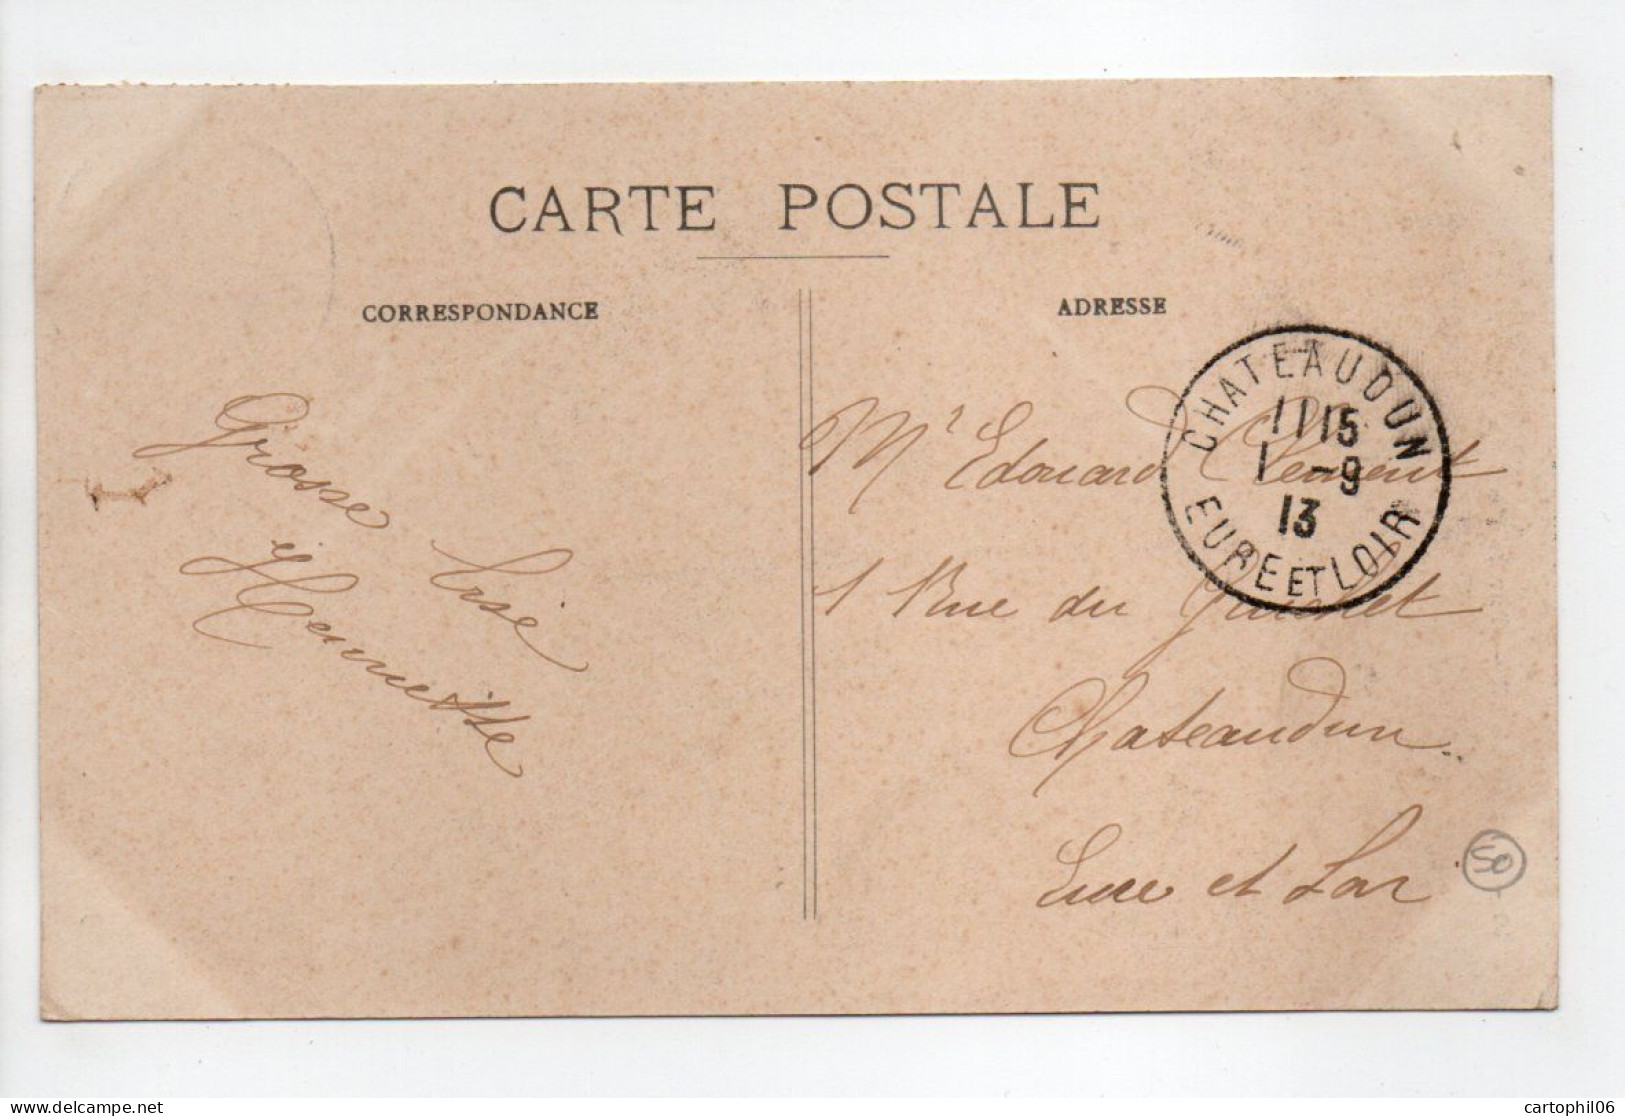 - CPA GRANVILLE (50) - Sur Le Port En Attendant La Marée 1913 - Photo Puel N° 10 - - Granville